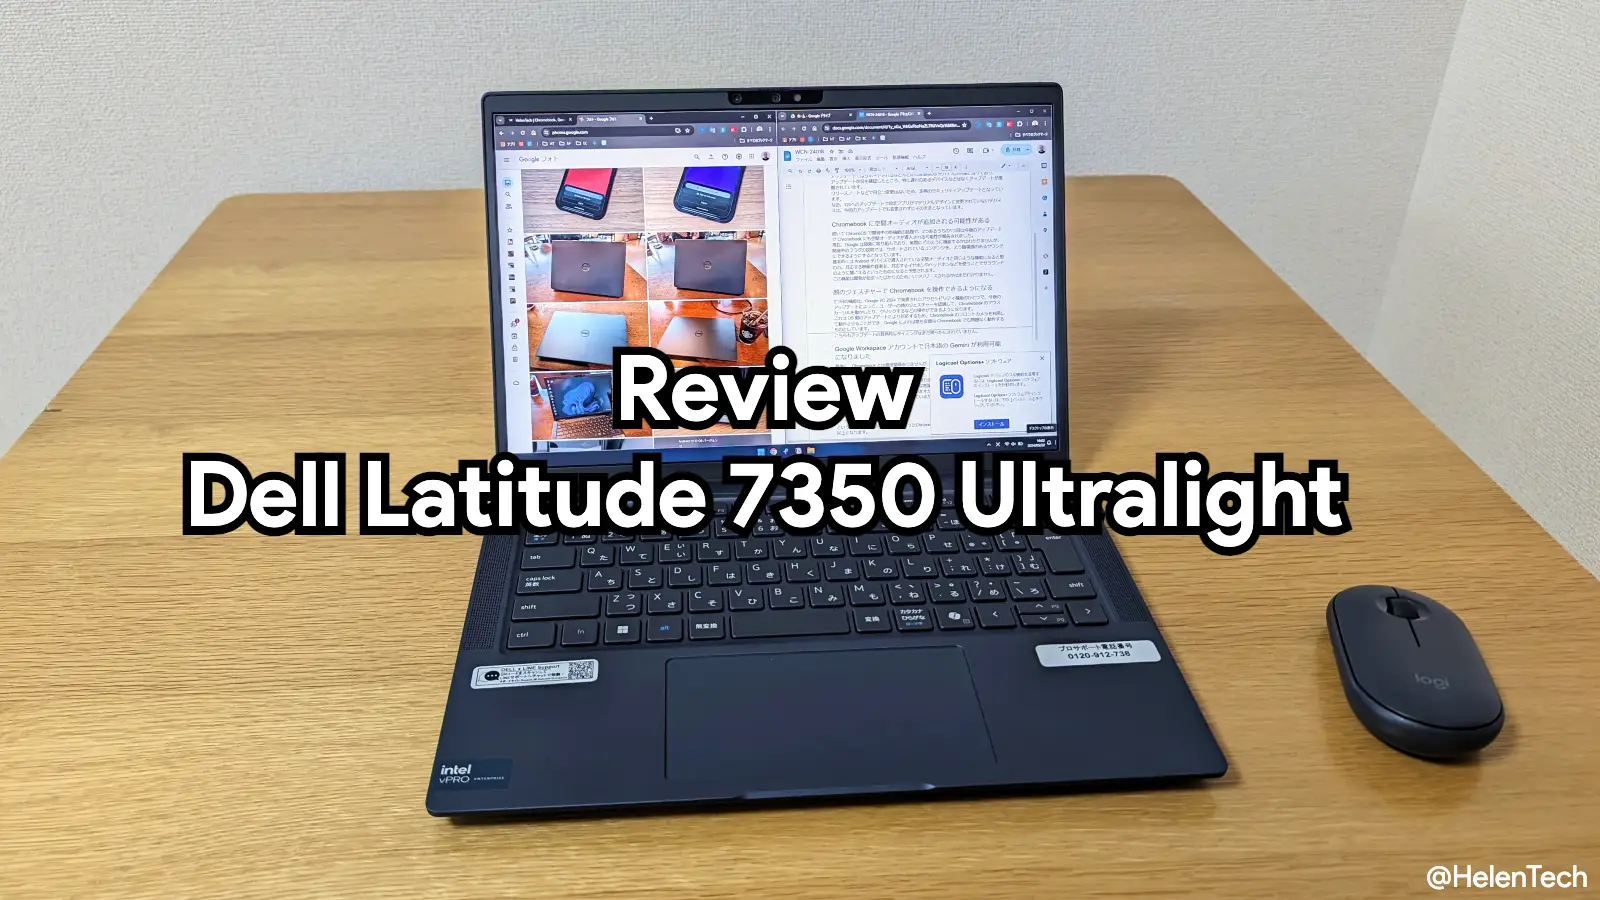 Dell Latitude 7350 Ultralight の実機レビューのヒーロー写真